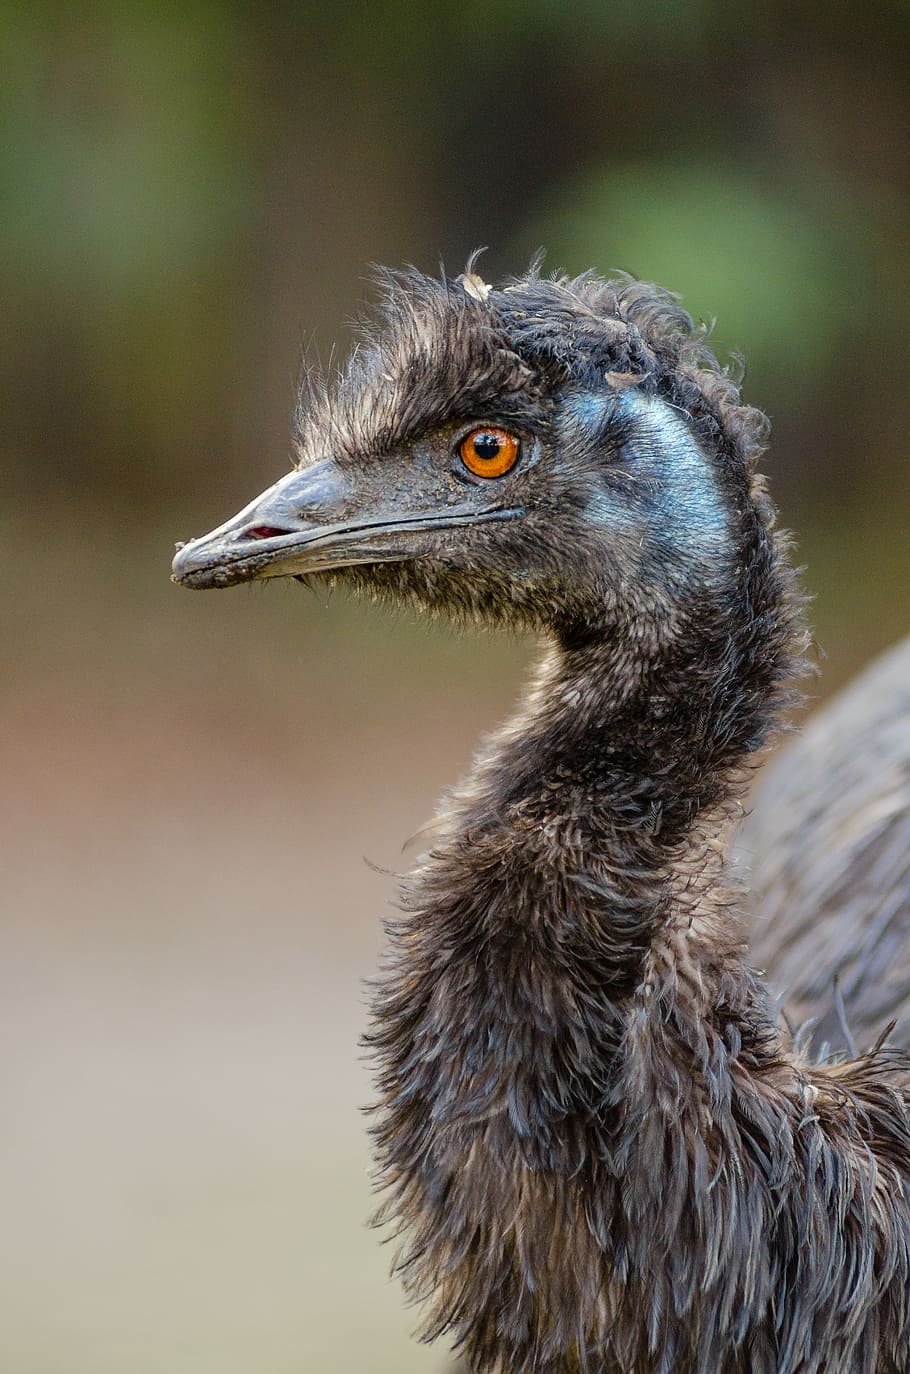 Emu, selectivo, enfoque, fotografía, pájaro, durante el día, temas de animales, un animal, animal, animales en estado salvaje